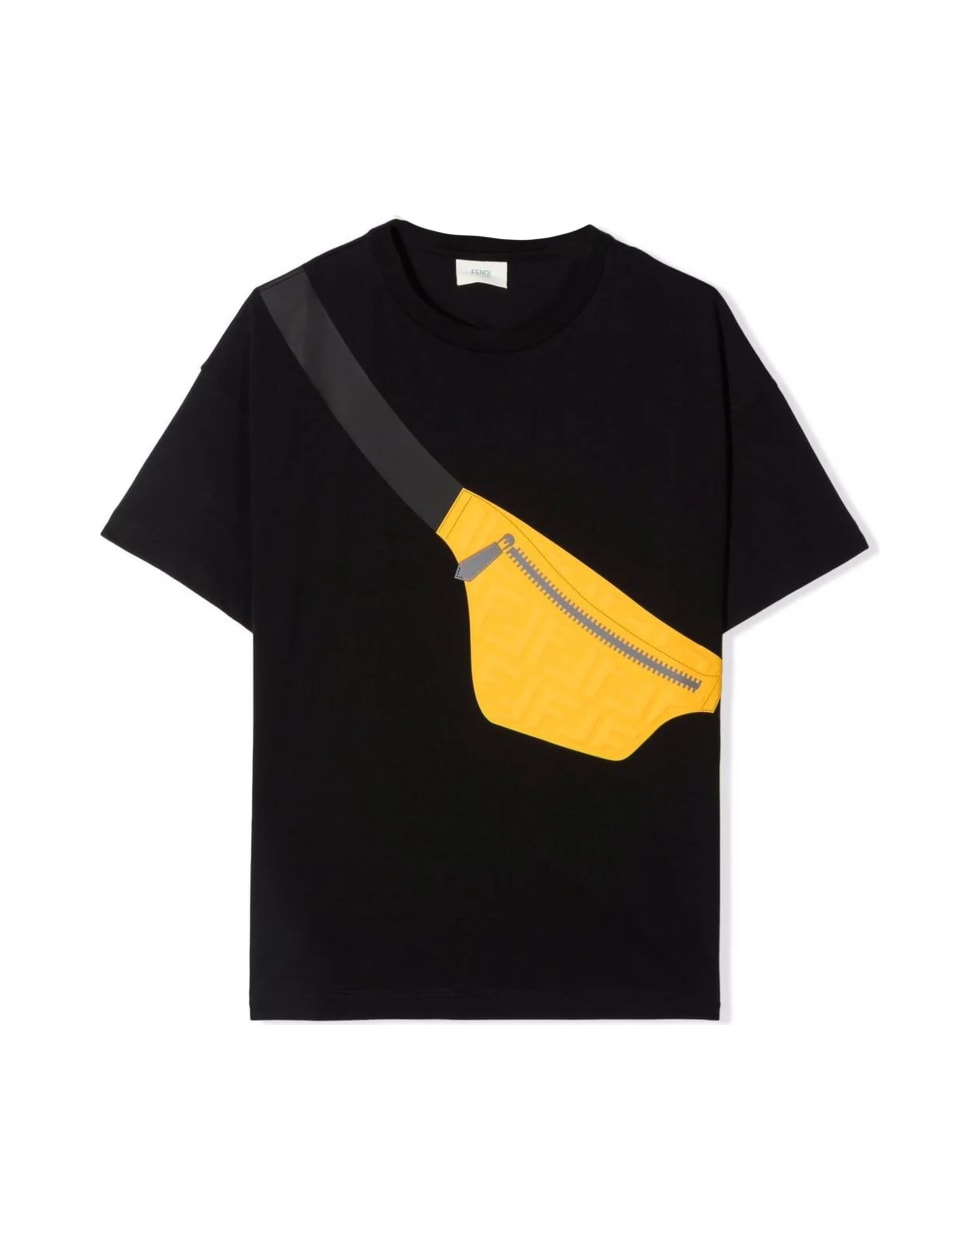 Fendi Black Cotton T-shirt - Nero+giallo